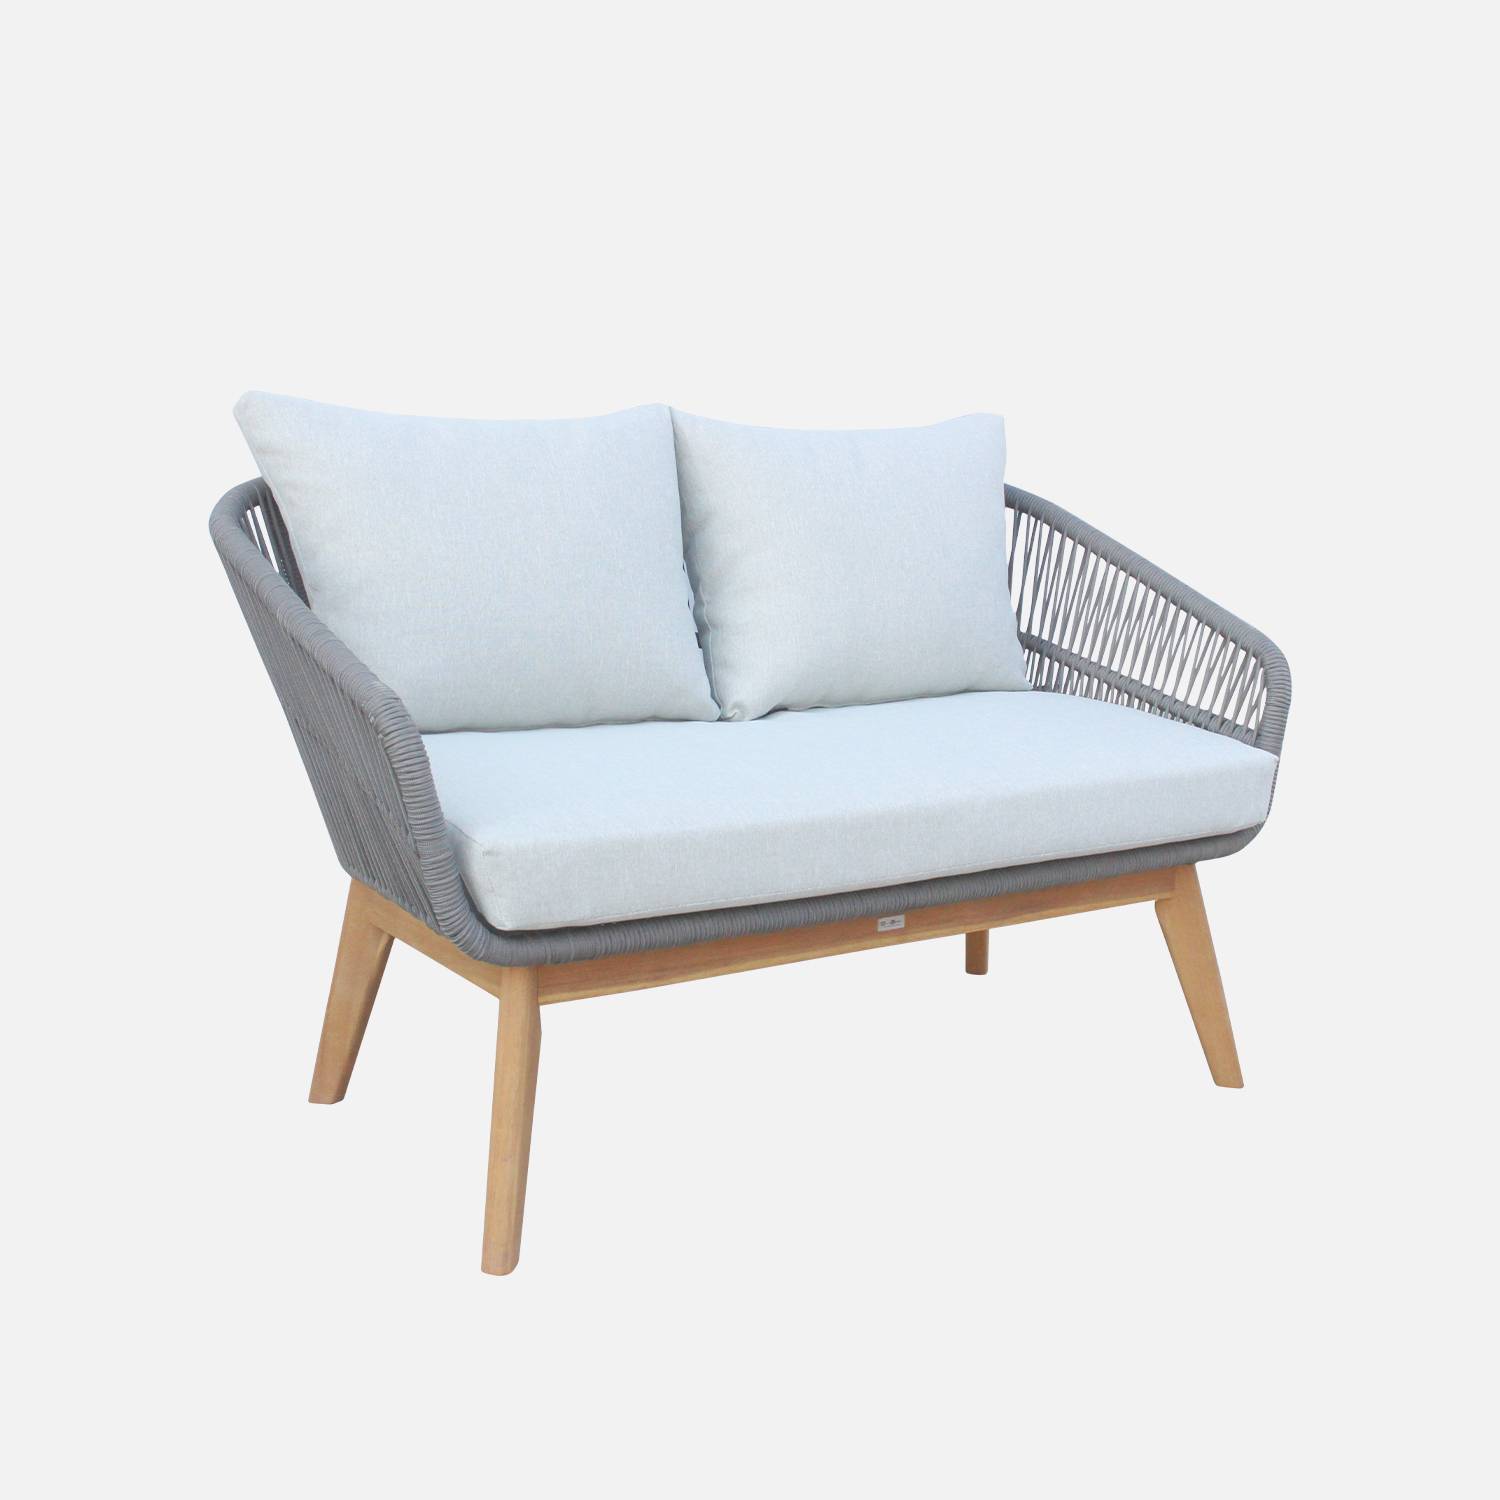 Gartengarnitur 4 Sitze - ROSARIO - aus geflochtenen Seilen, Holz und Aluminium, grau / graumelierte Kissen Photo4